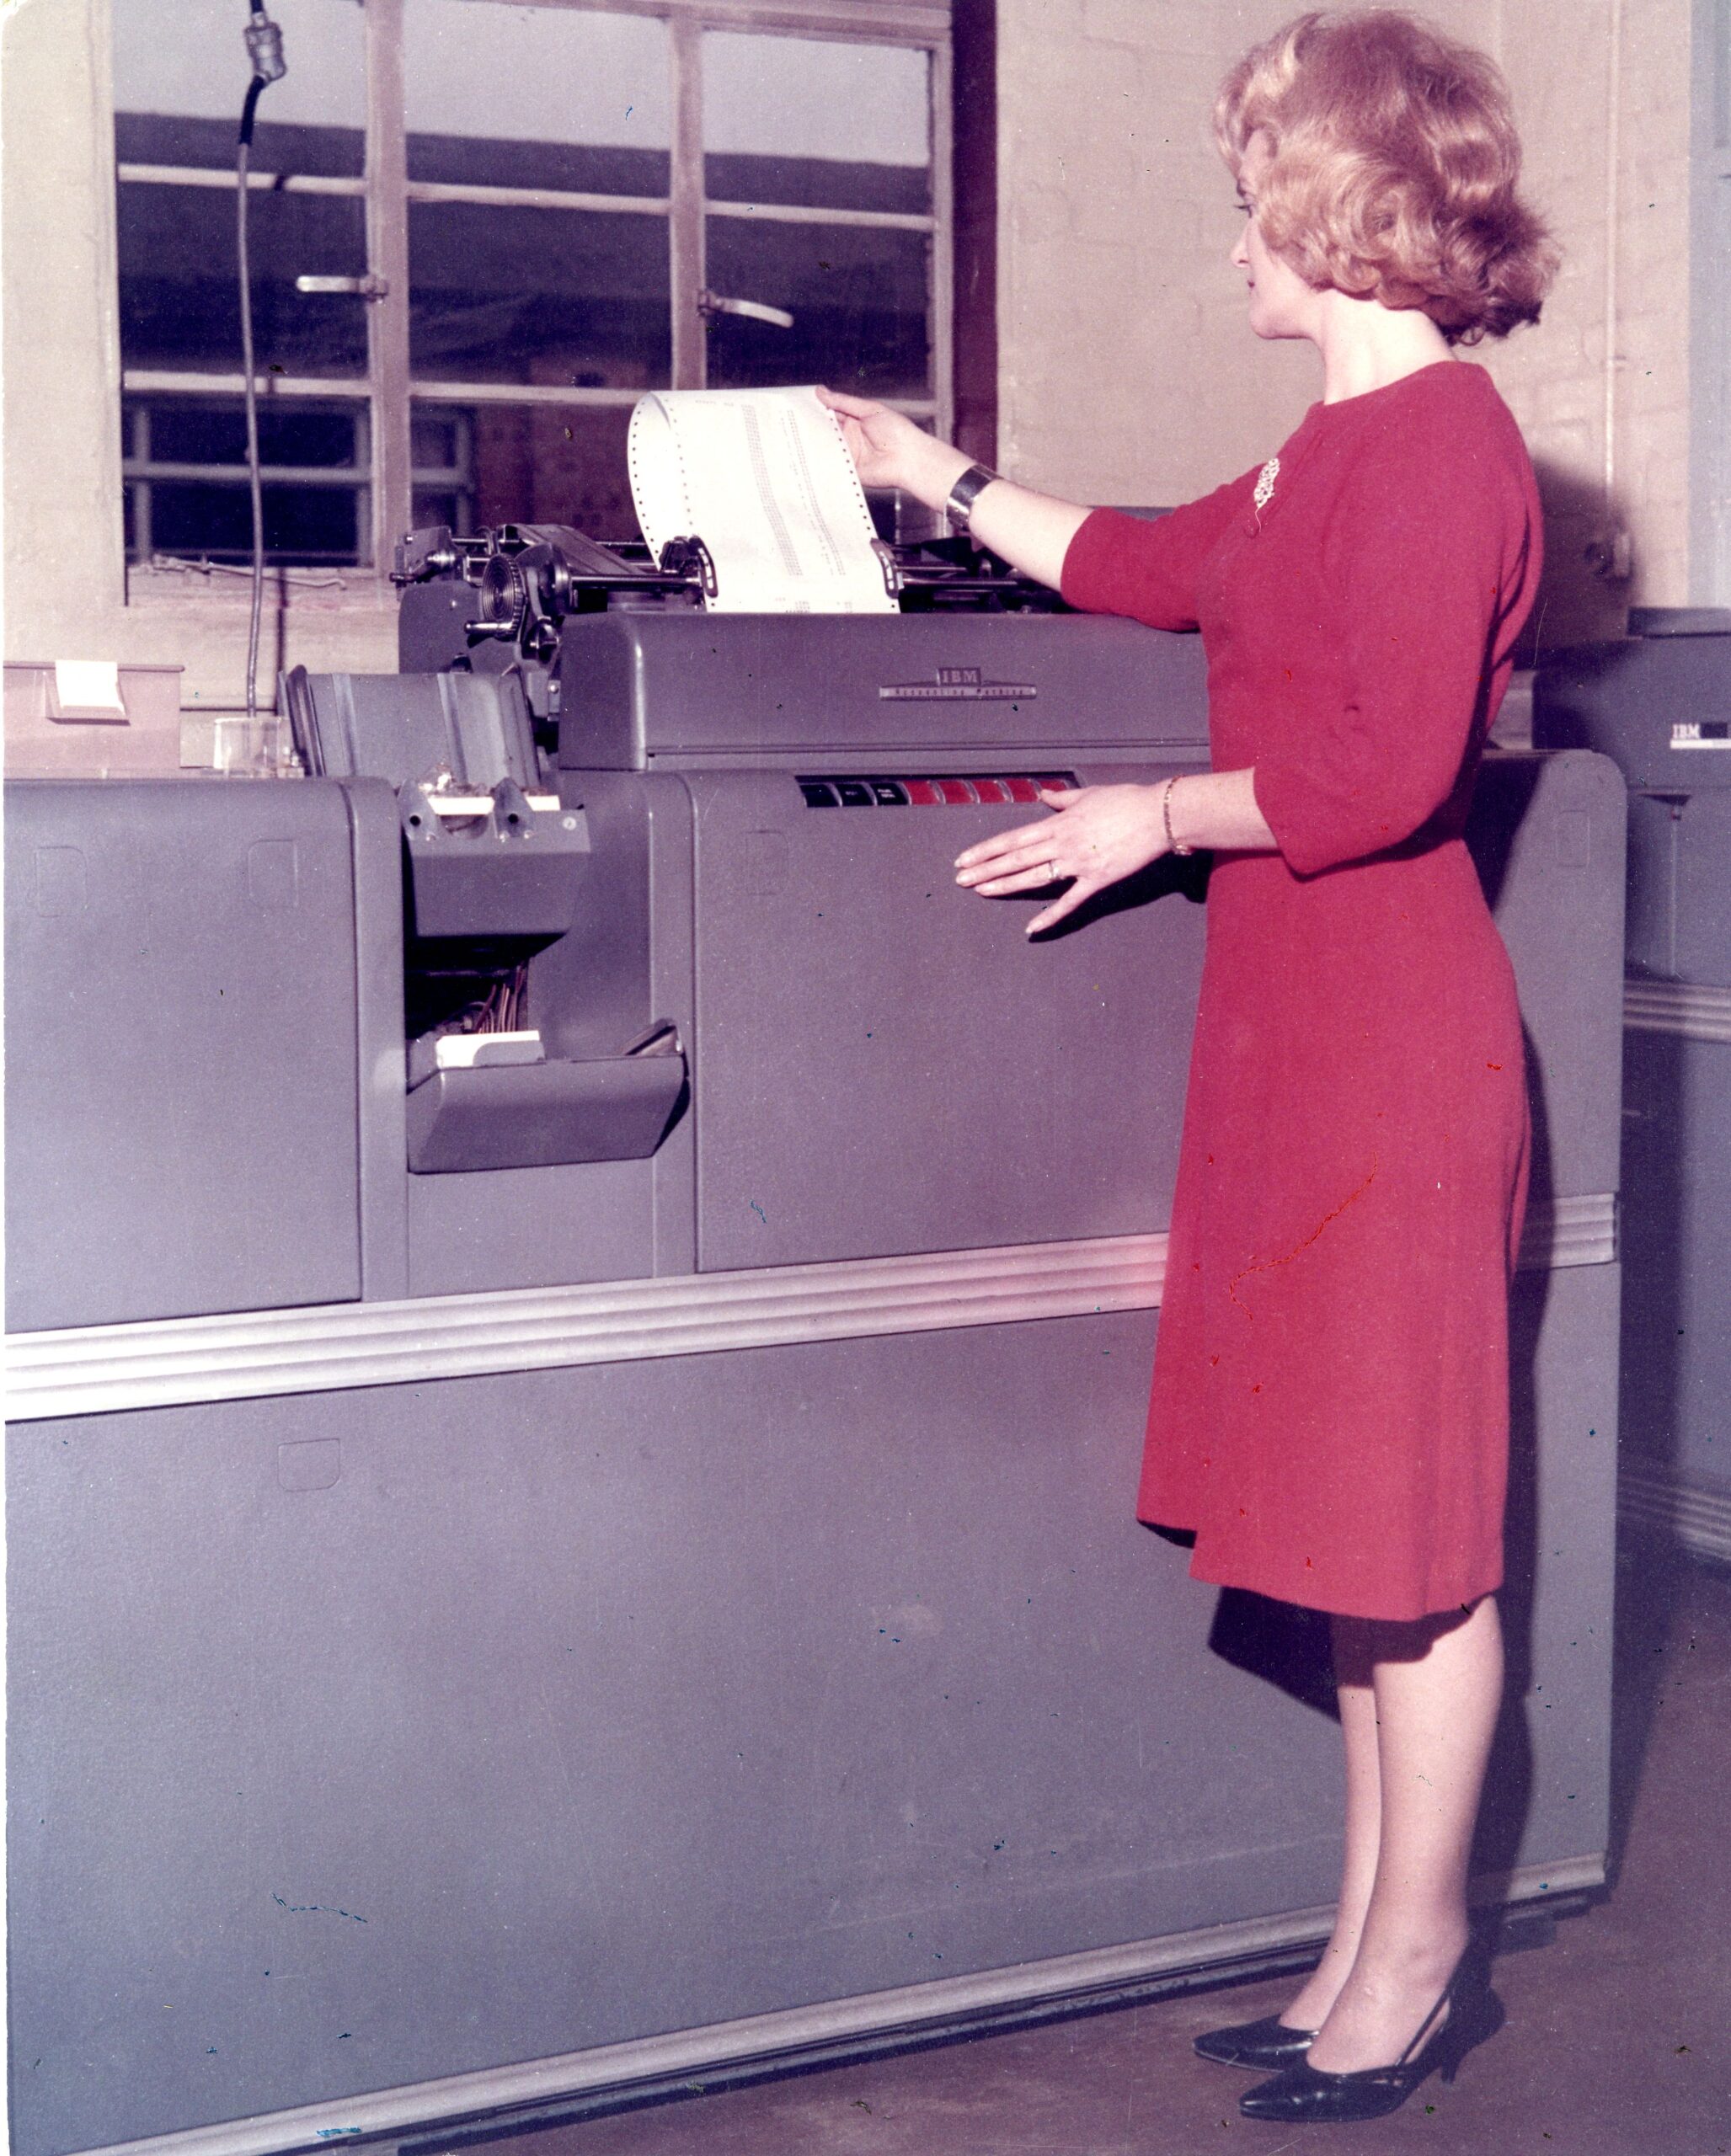 IBM 420 accounting machine at Chessington